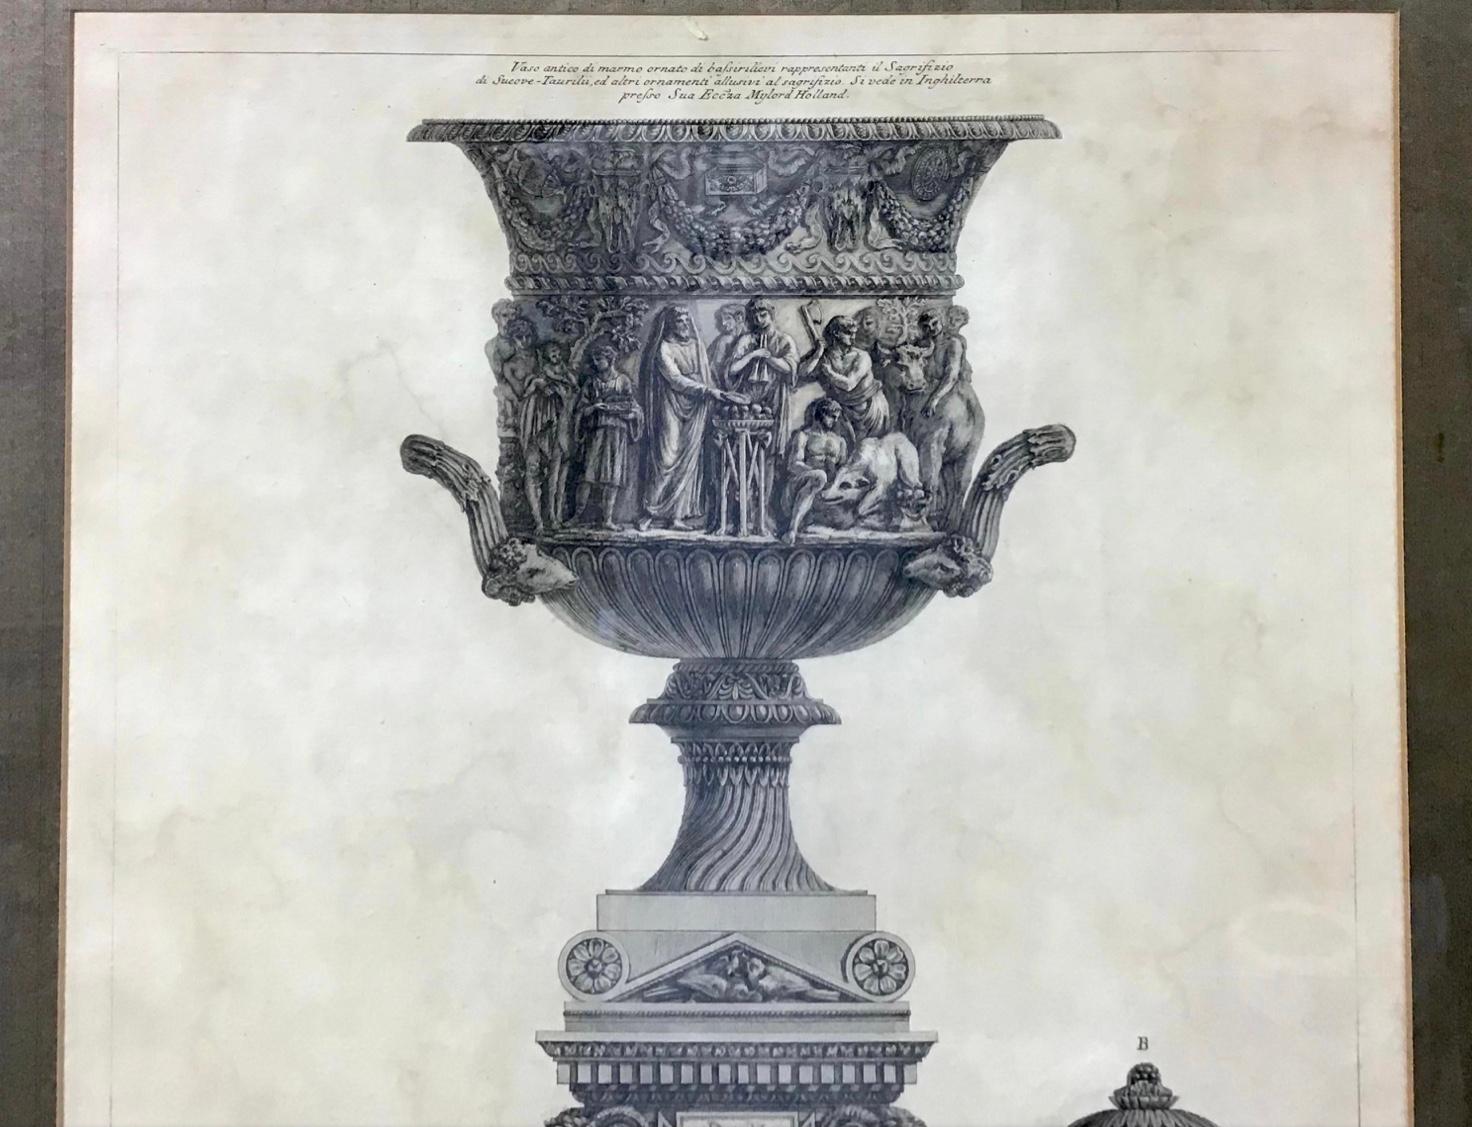 Die zentrale Vase zeigt einen Priester und Anbeter, die die Suovetaurilia (ein Wildschwein, einen Widder und einen Stier) opfern, und steht auf einem Sarkophag, der von geflügelten Sphingen bewacht wird. Die linke Vase ist mit zwei Vögeln